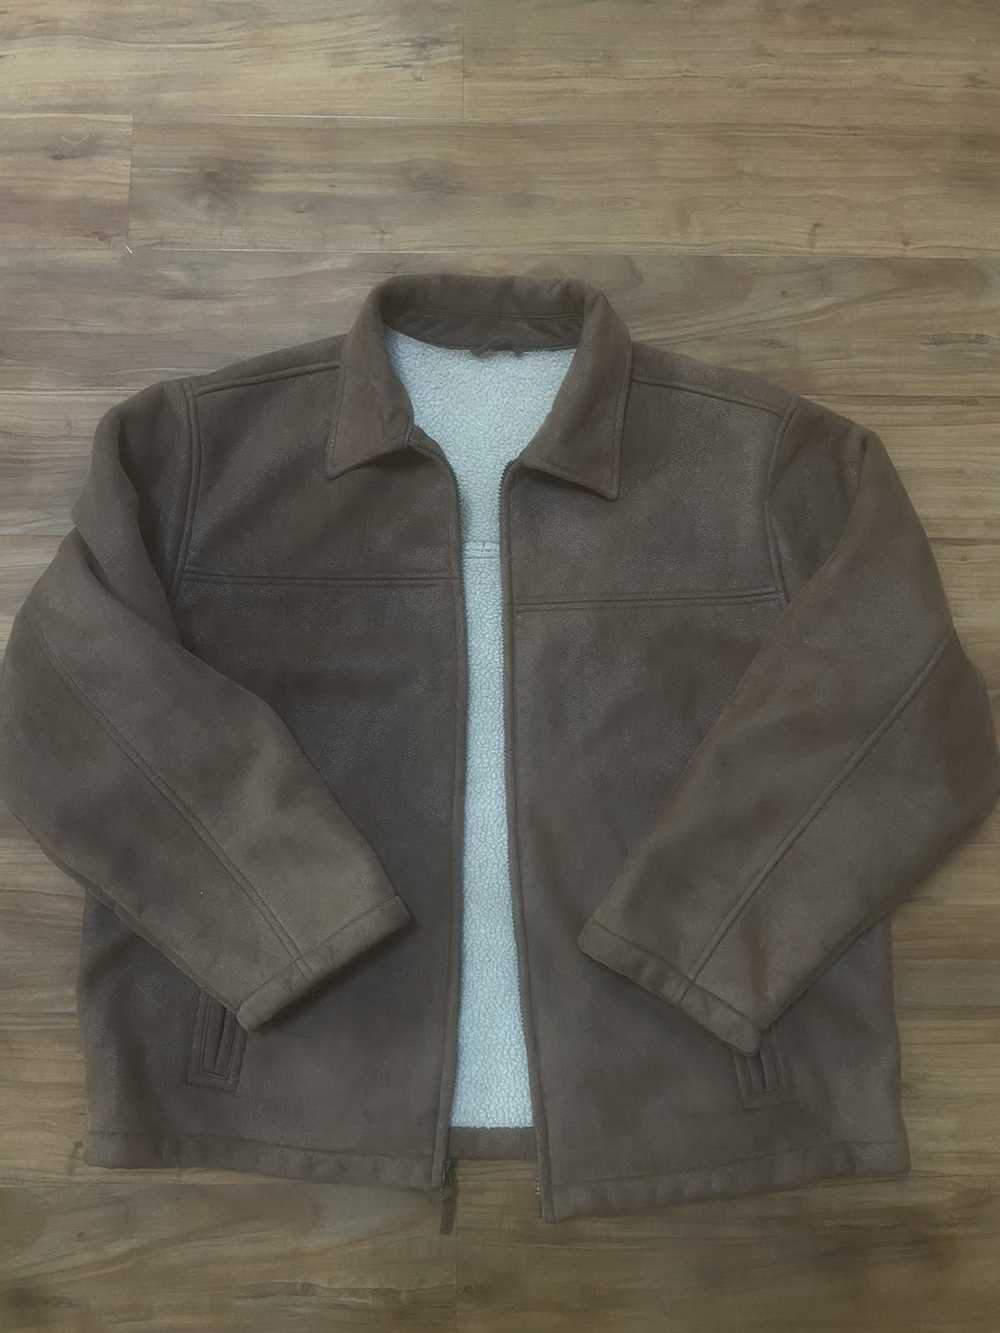 Vintage Sherpa lined suede leather jacket - Gem